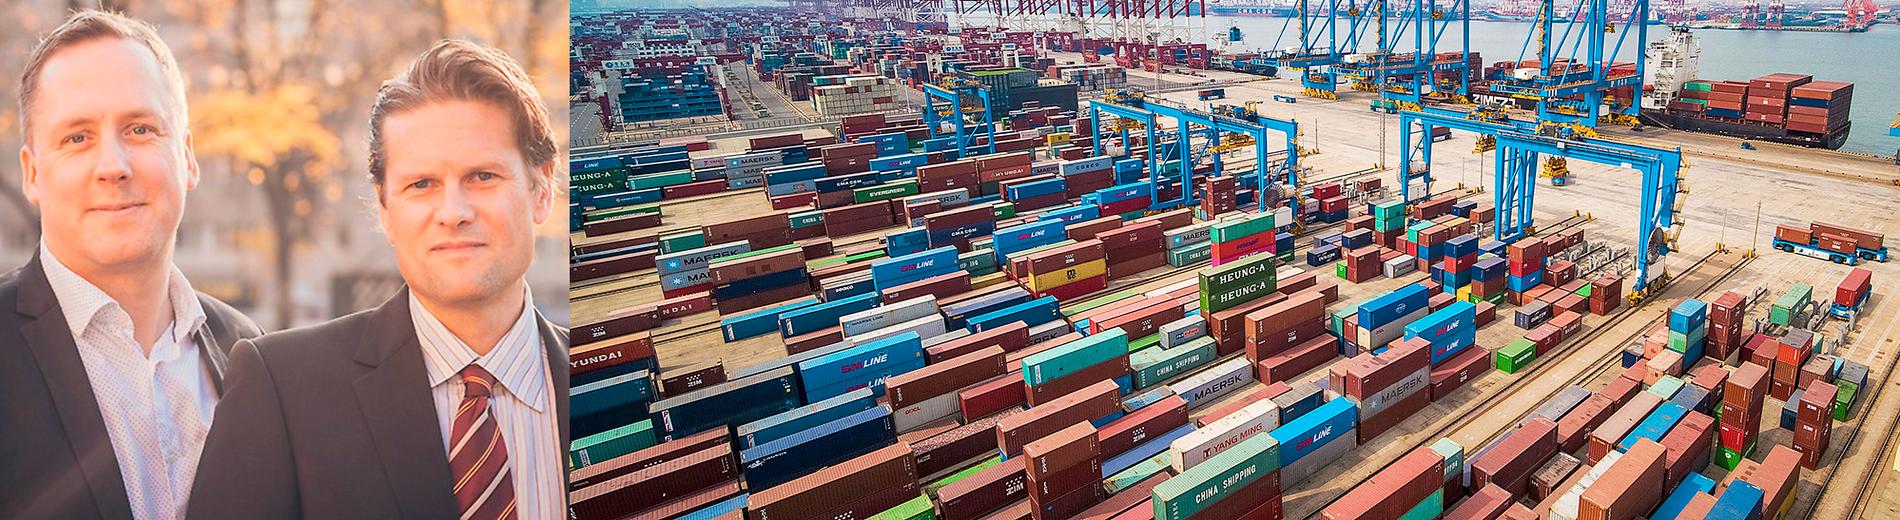 Fredrik Segerfeldts och Mattias Svensson har skrivit boken ”Frihandel för nybörjare”. Till höger syns fartyg som lastas i containerhamnen i Qingdao i östra Kina. Enligt författarna till boken ”Frihandel för nybörjare” är det handel, ­inte arbete, som ligger bakom allt välstånd.